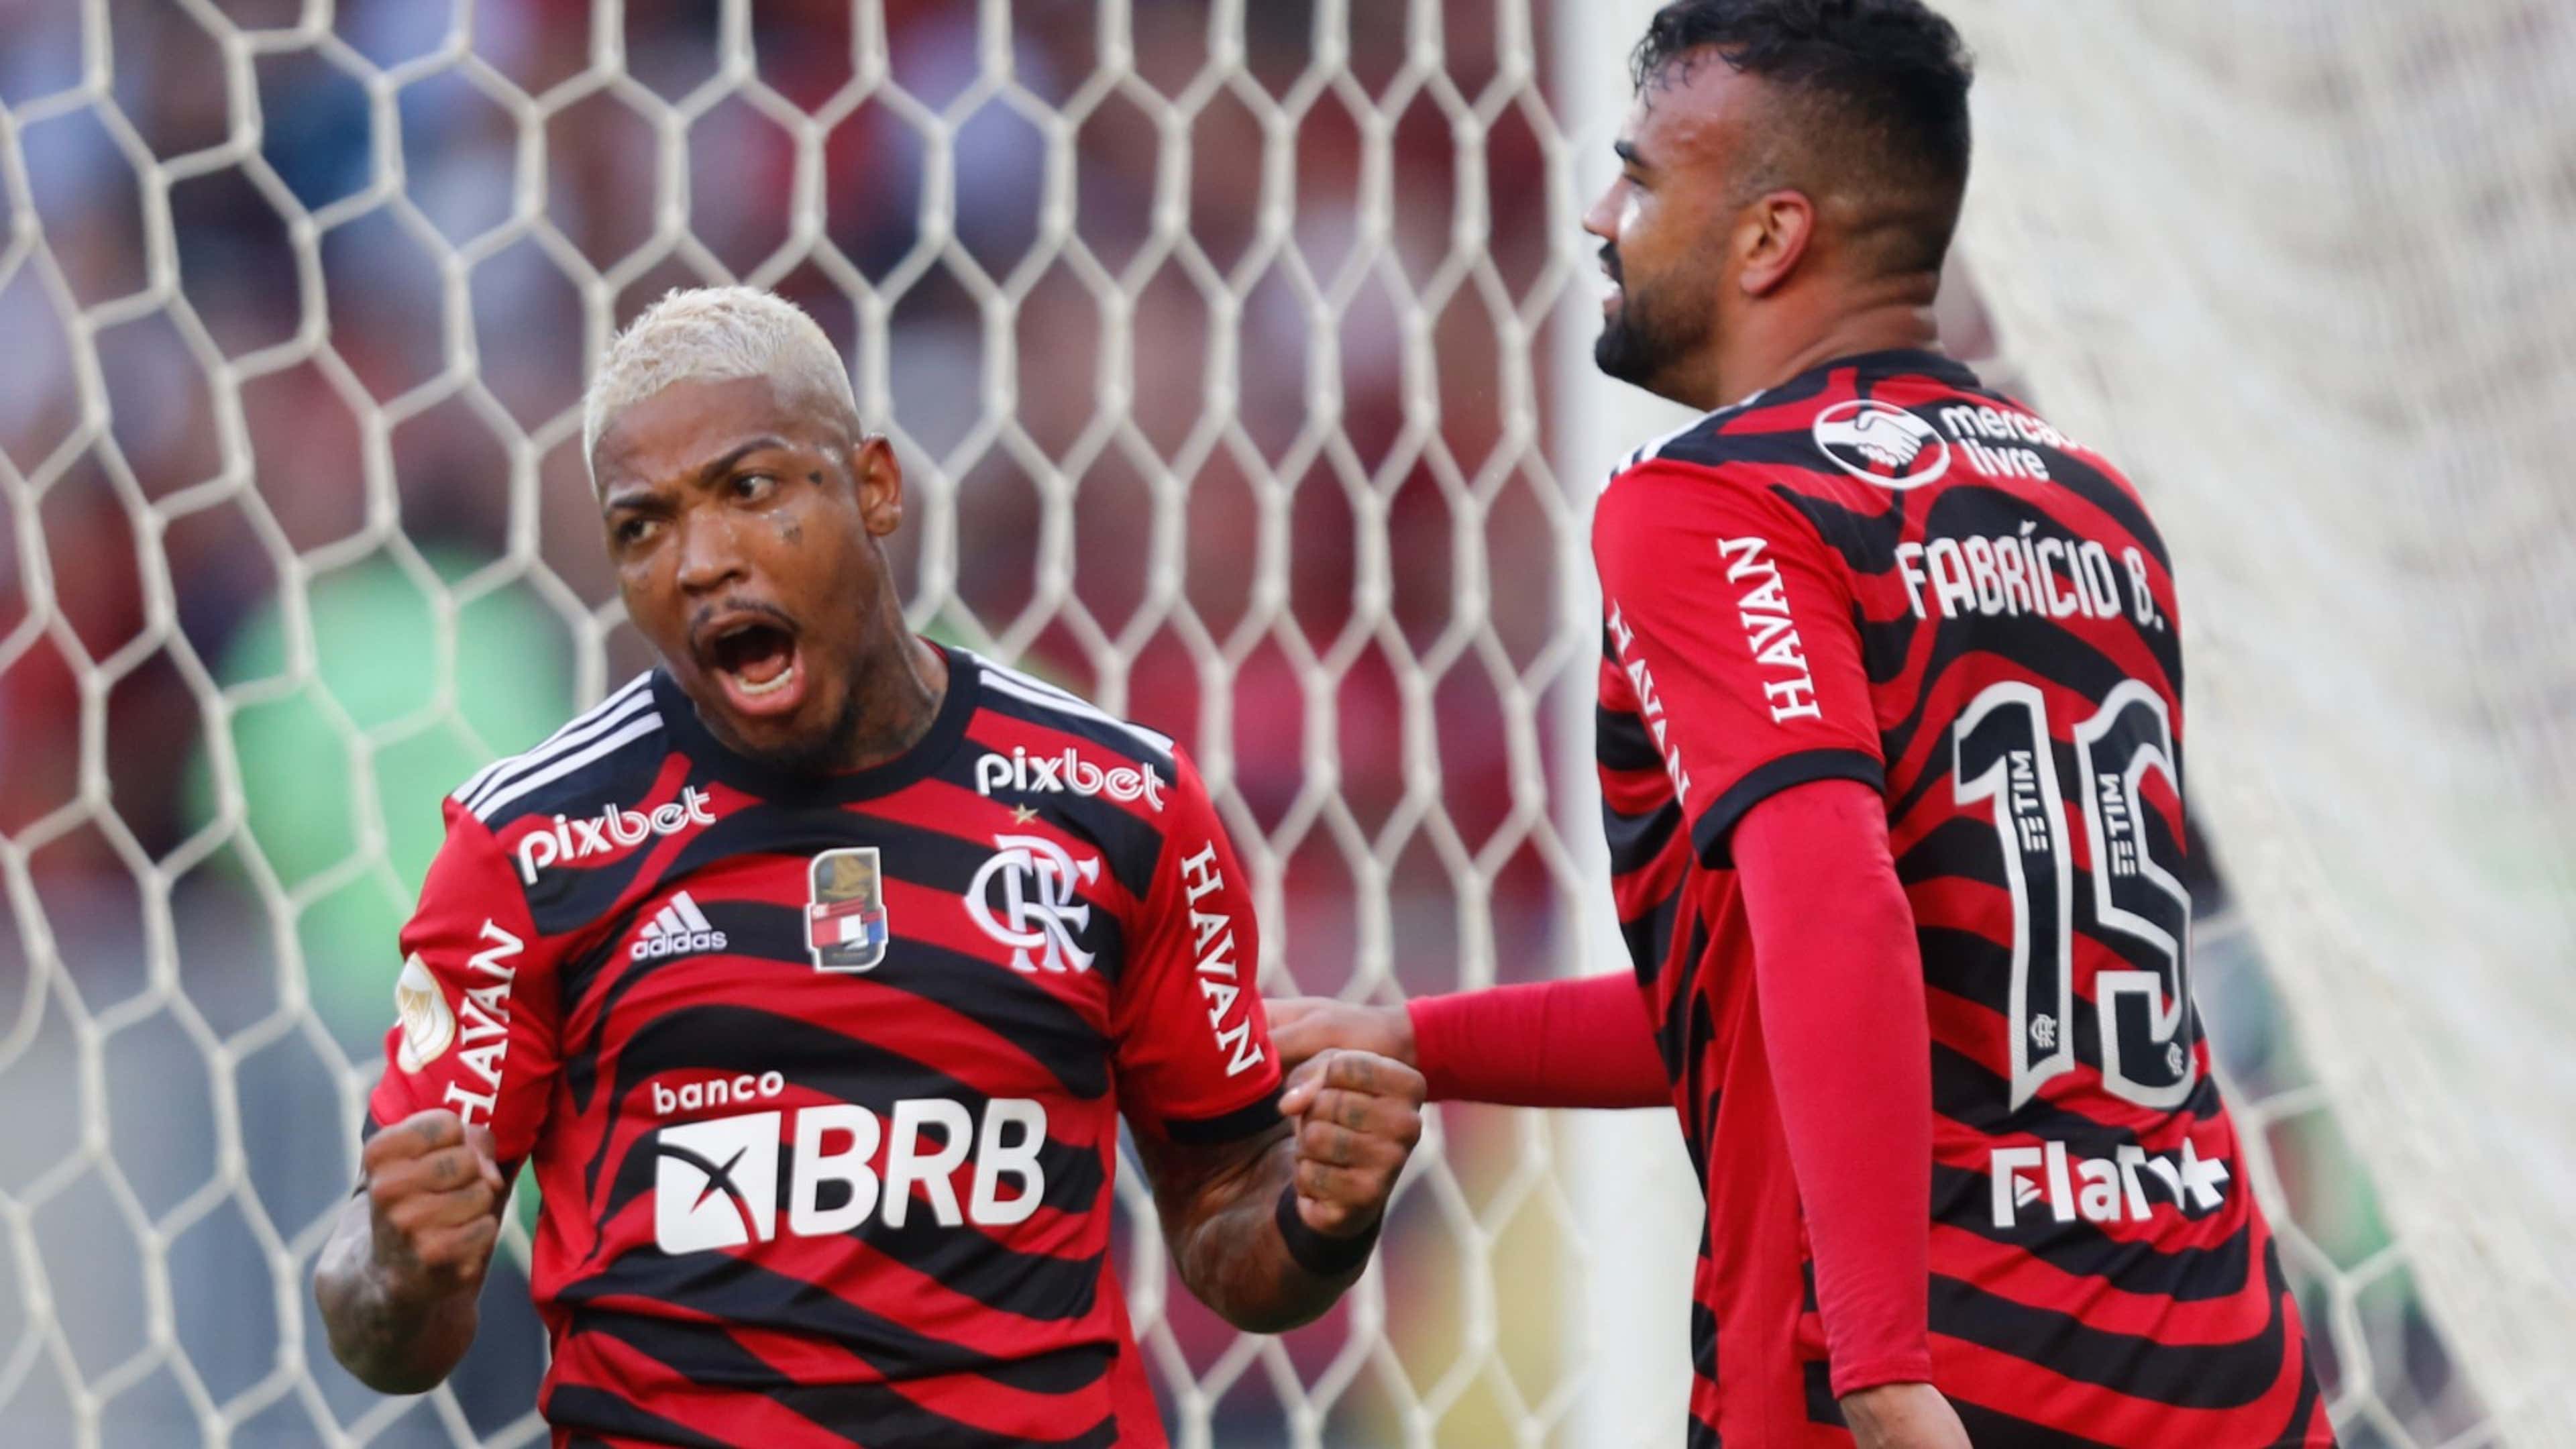 Jogos de futebol hoje: 3 atletas do Flamengo podem entrar em campo